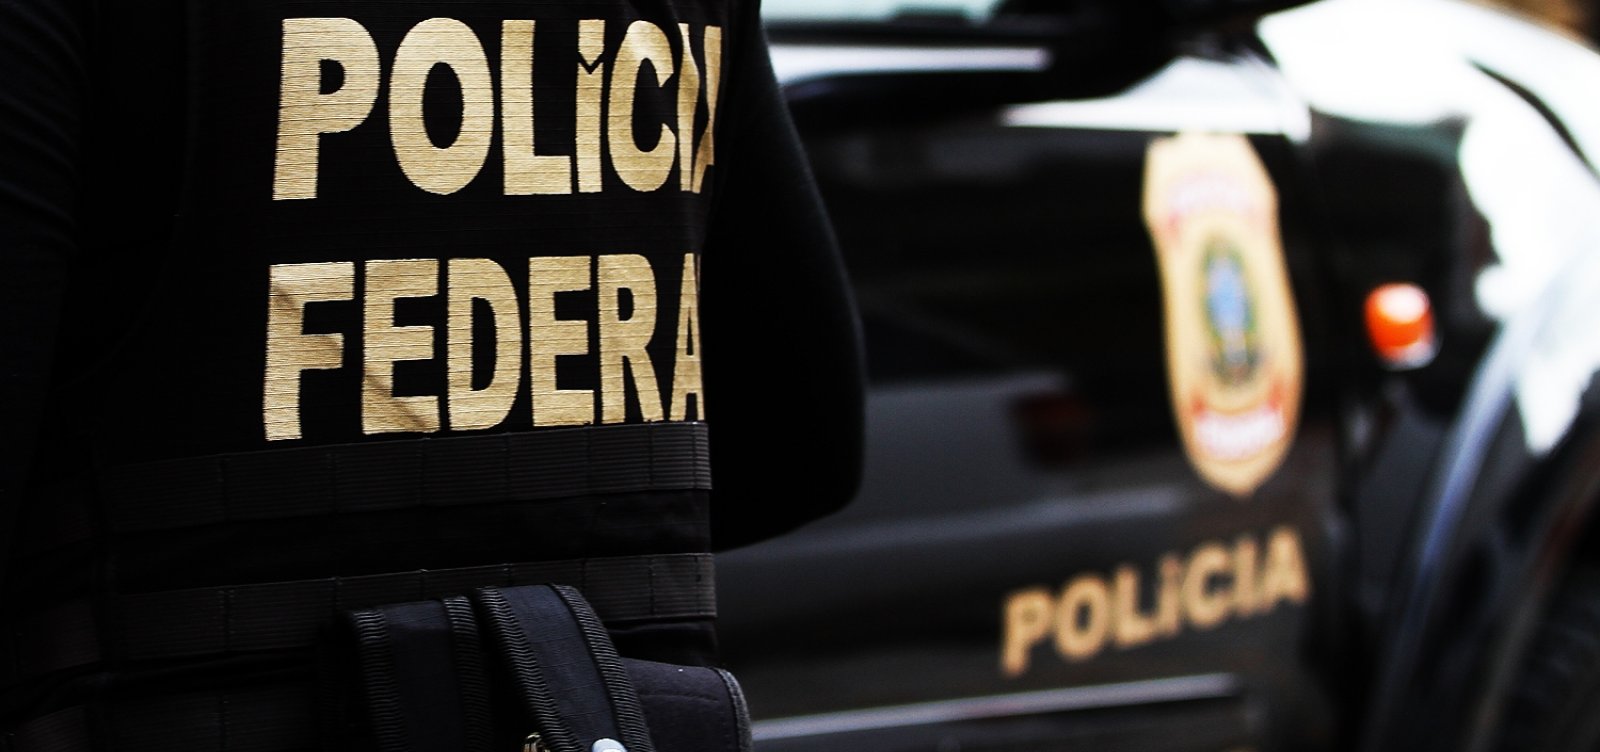 Polícia Federal restringe emissão de passaporte e suspende alguns atendimentos